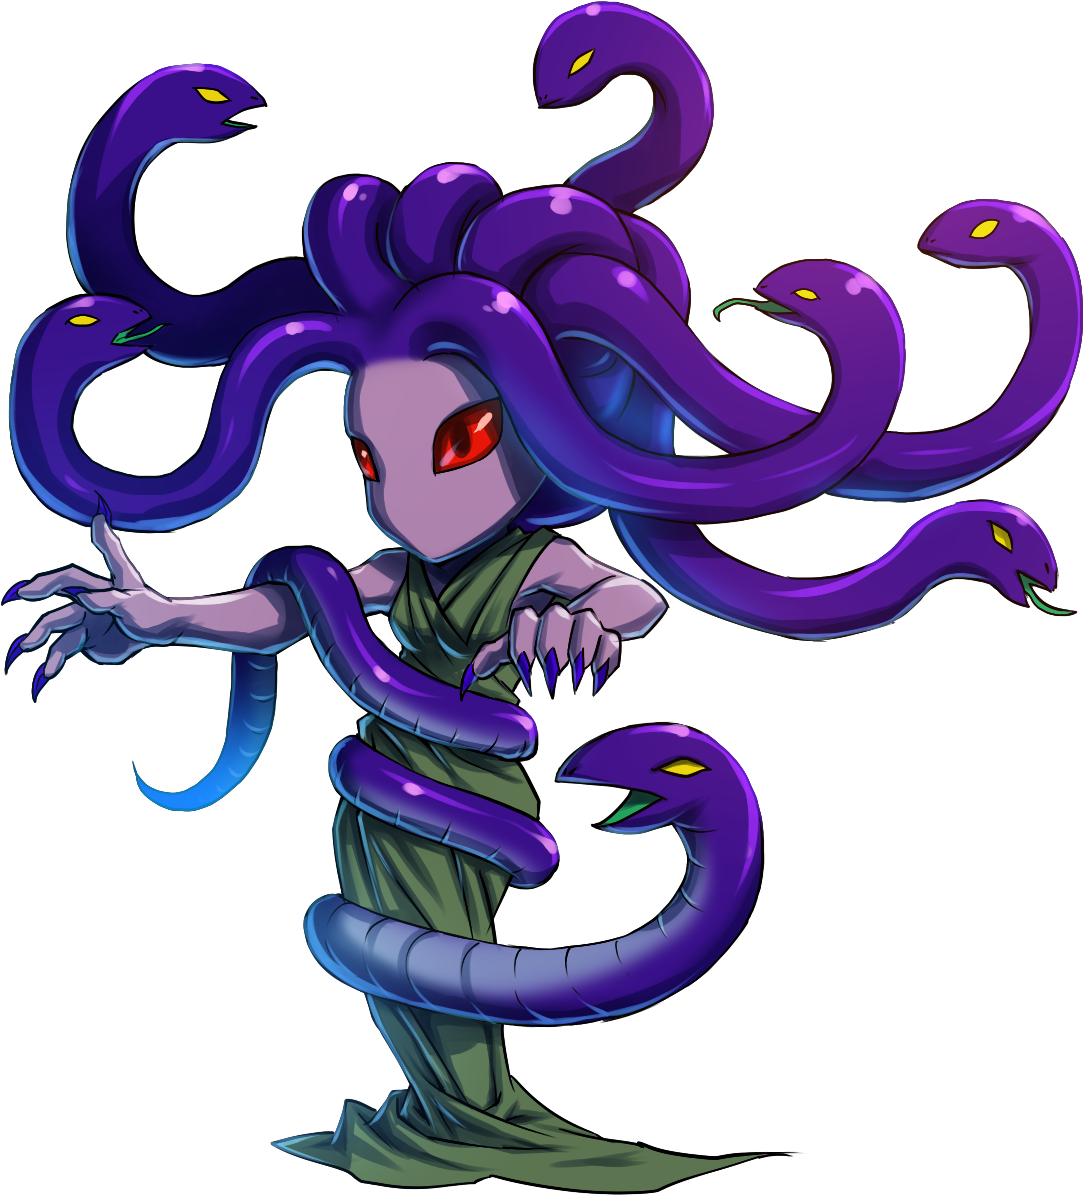 Medusa I - Brave Frontier Medusa (1300x1280)